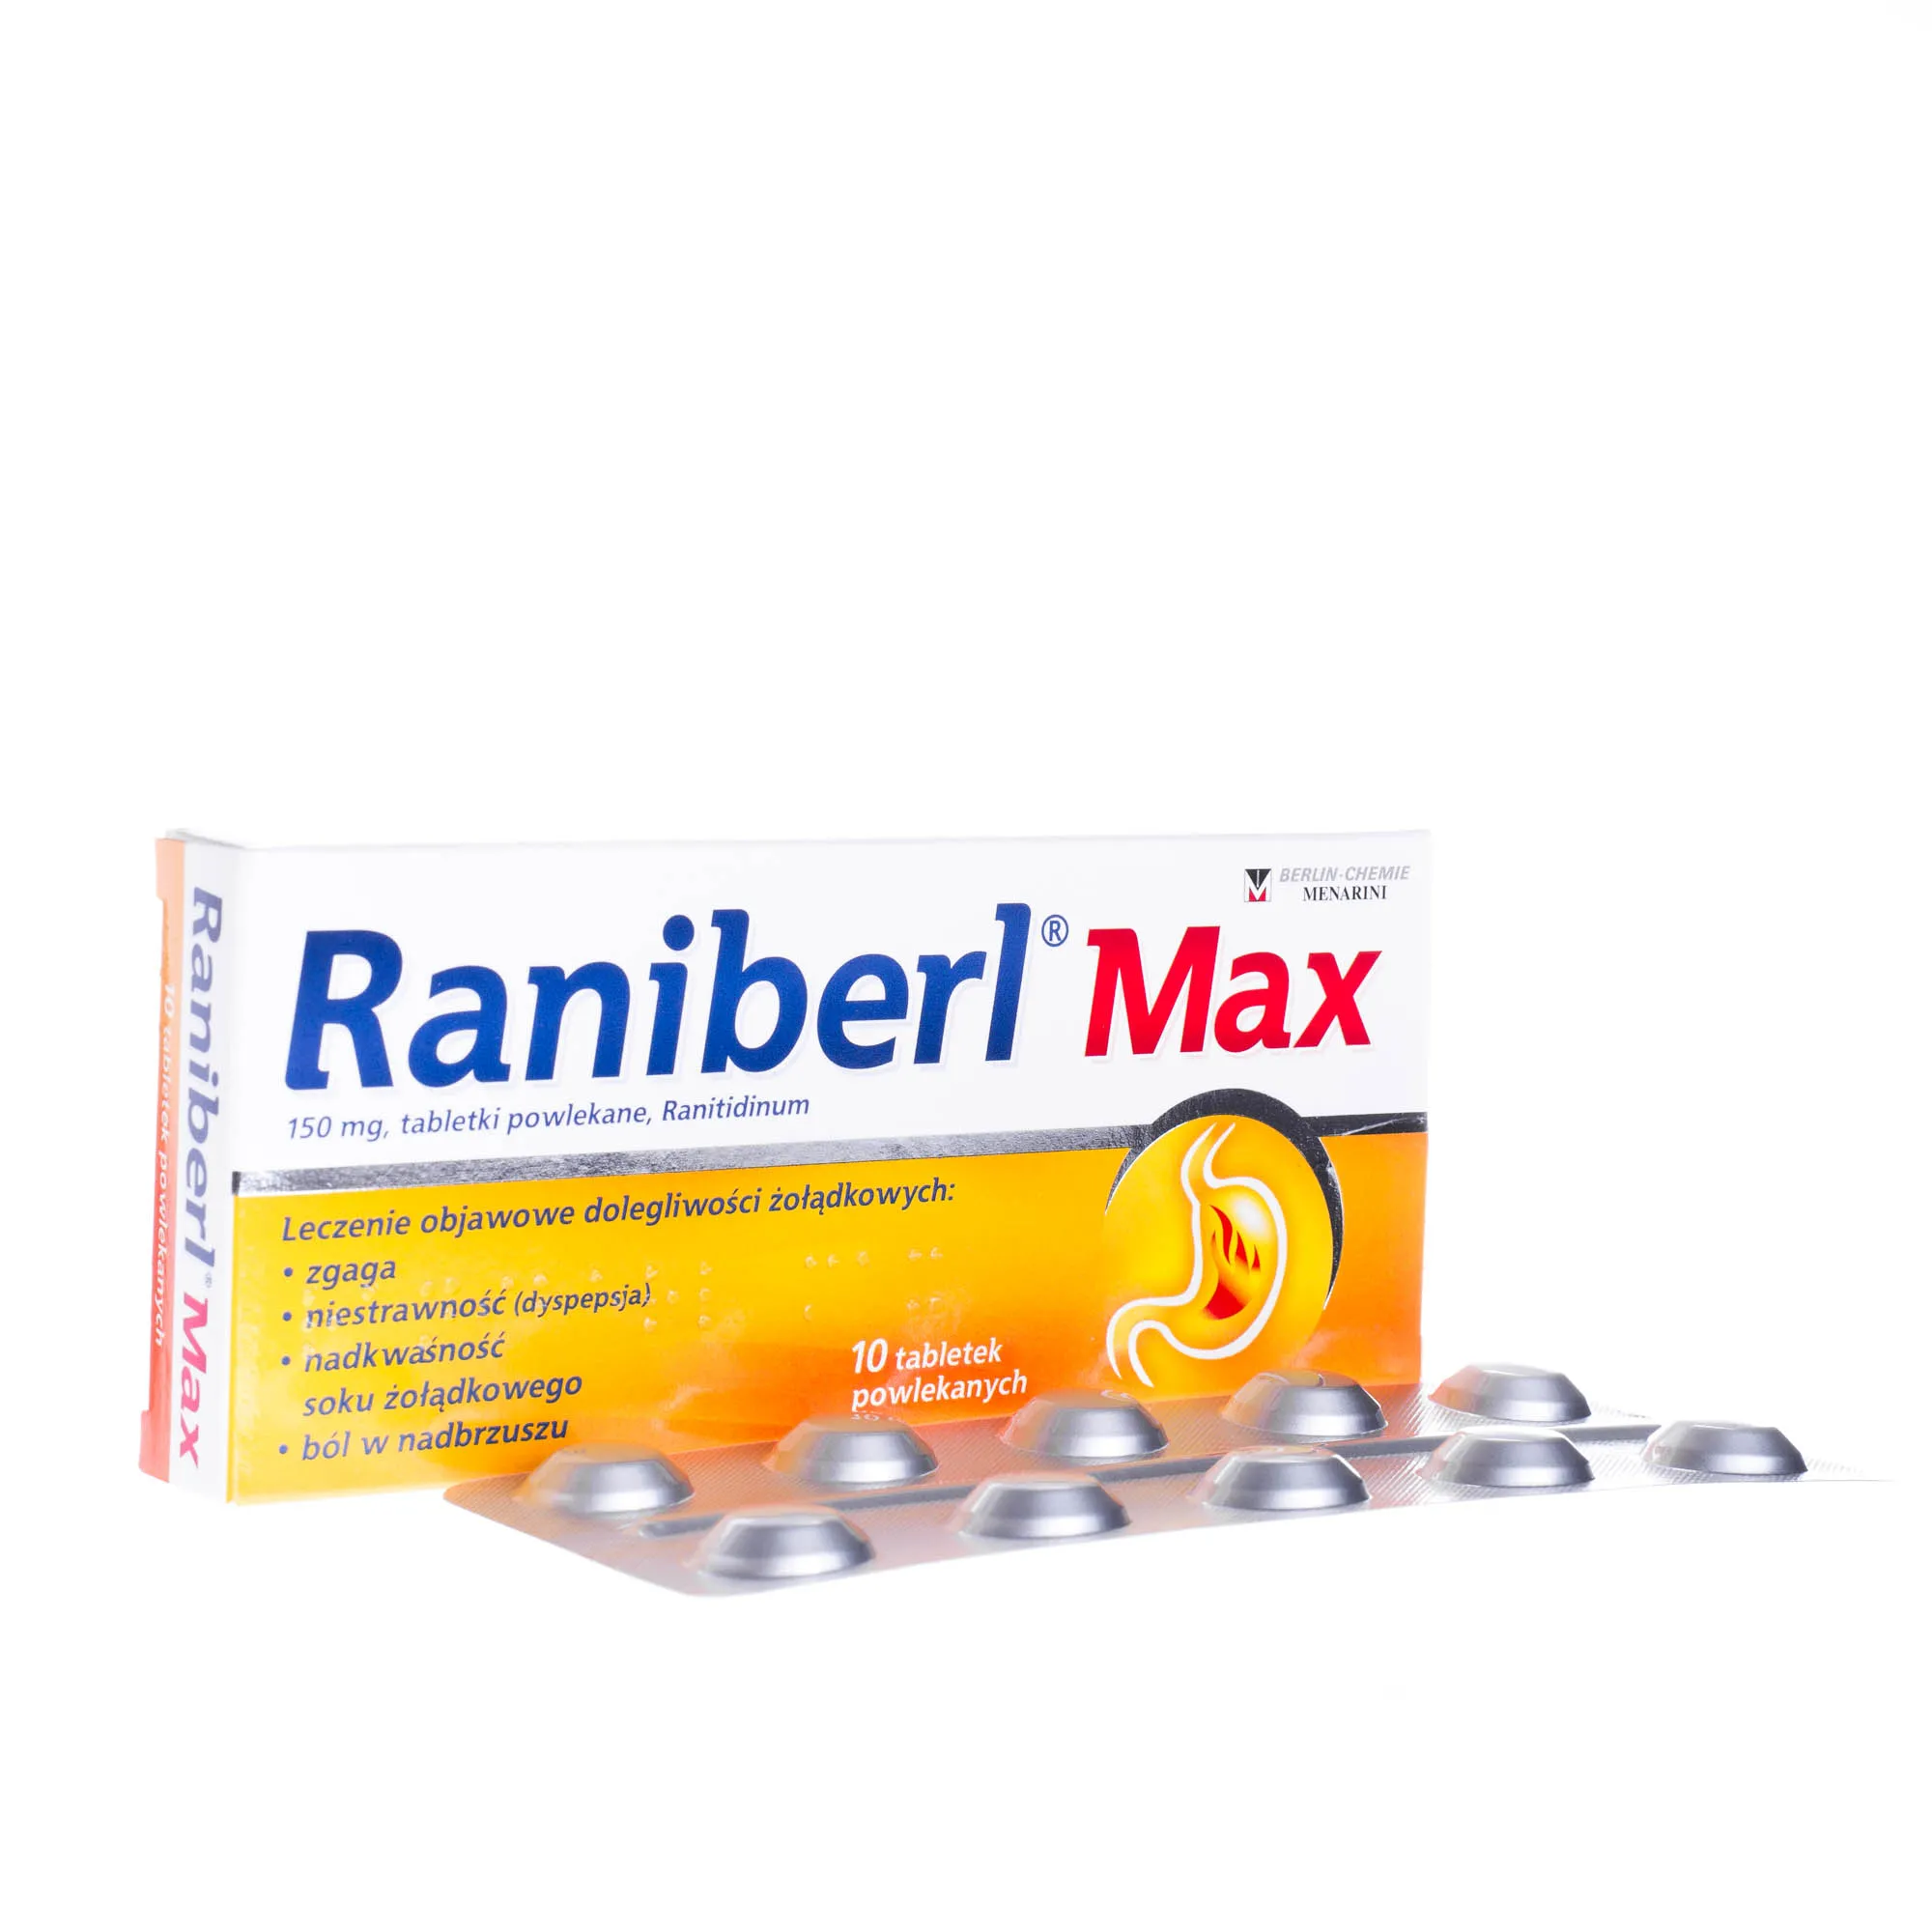 Raniberl Max 150 mg - leczenie objawowe dolegliwości żołądkowych, 10 tabletek powlekanych 